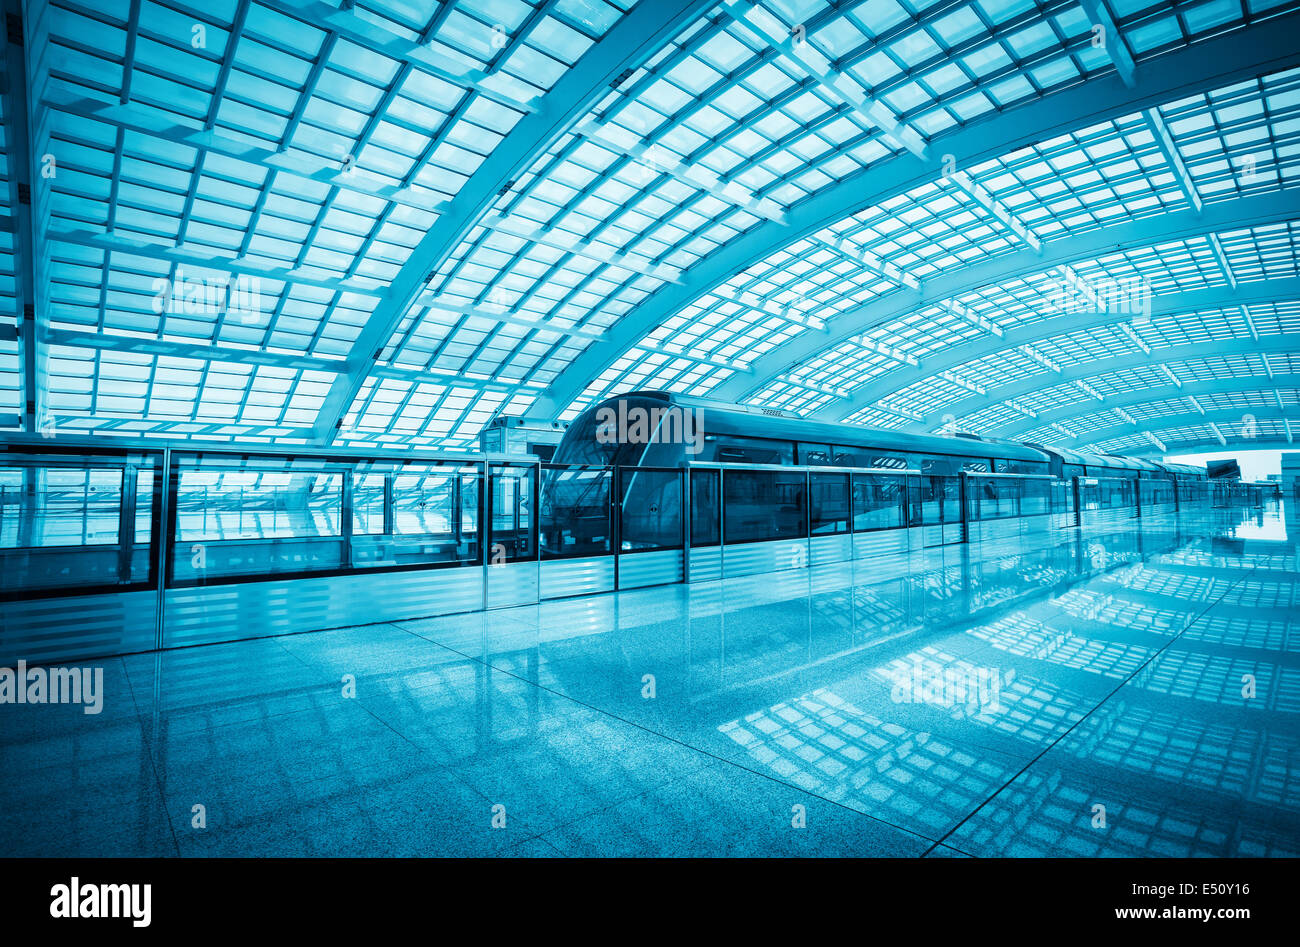 Moderno tren Airport Express en Beijing Foto de stock